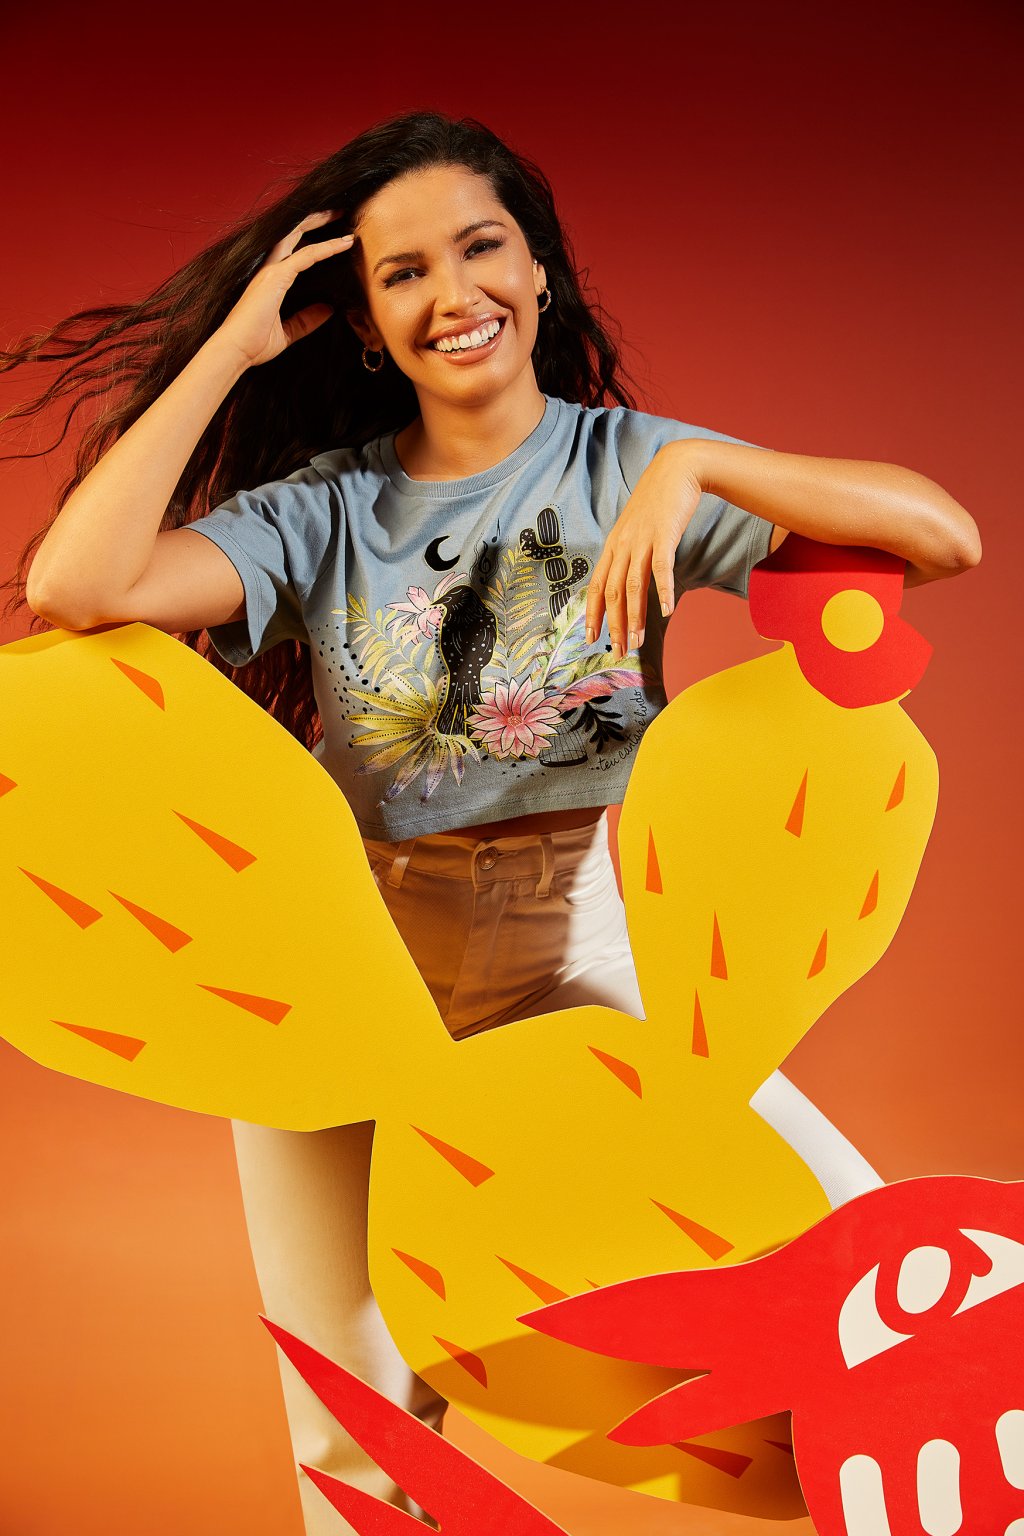 Juliette Freire usando uma camiseta azul cropped estampada com calça branca. Ela está sorrindo, com uma das mãos no cabelo e a outra apoiada em uma estrutura em formato de cacto amarelo e laranja.